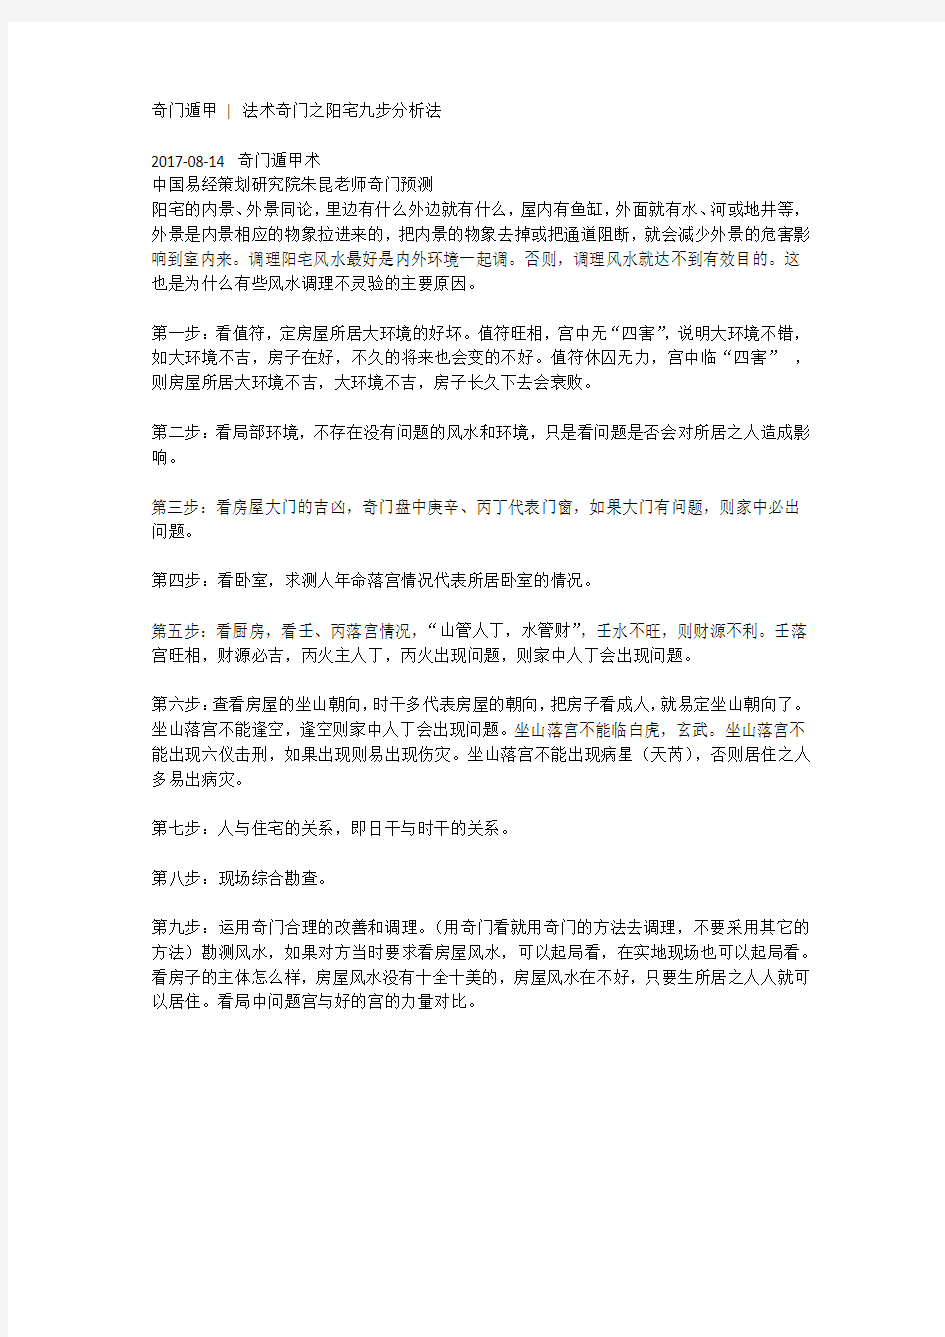 中国易经策划研究院朱昆老师奇门预测法术奇门之阳宅九步分析法